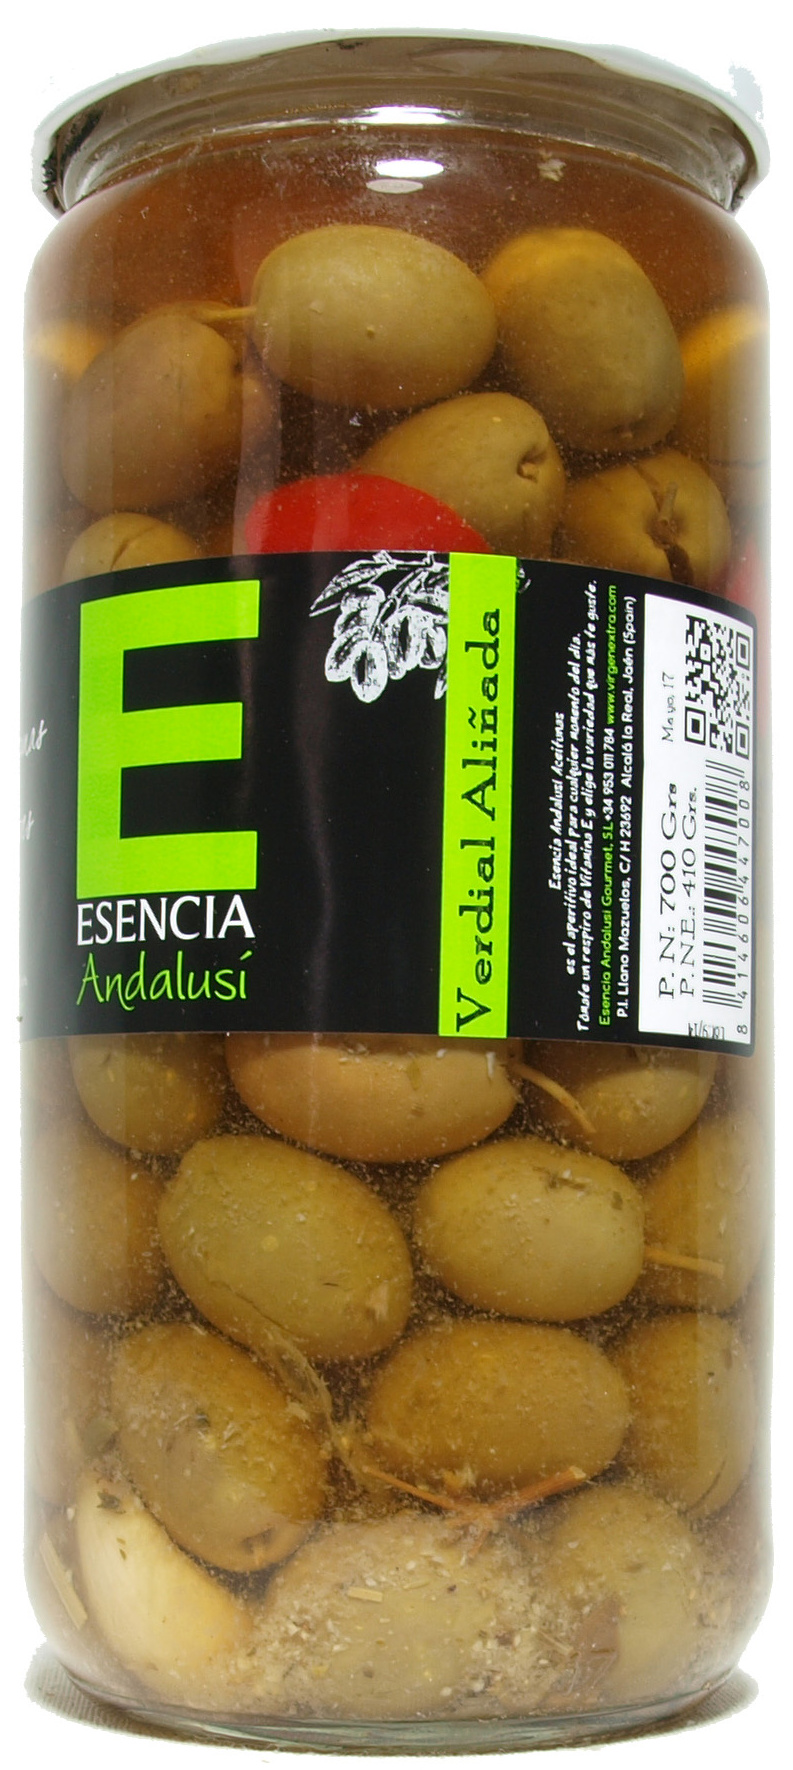 Aceitunas verdes aliñadas "Esencia Andalusí" Variedad verdial - Producto